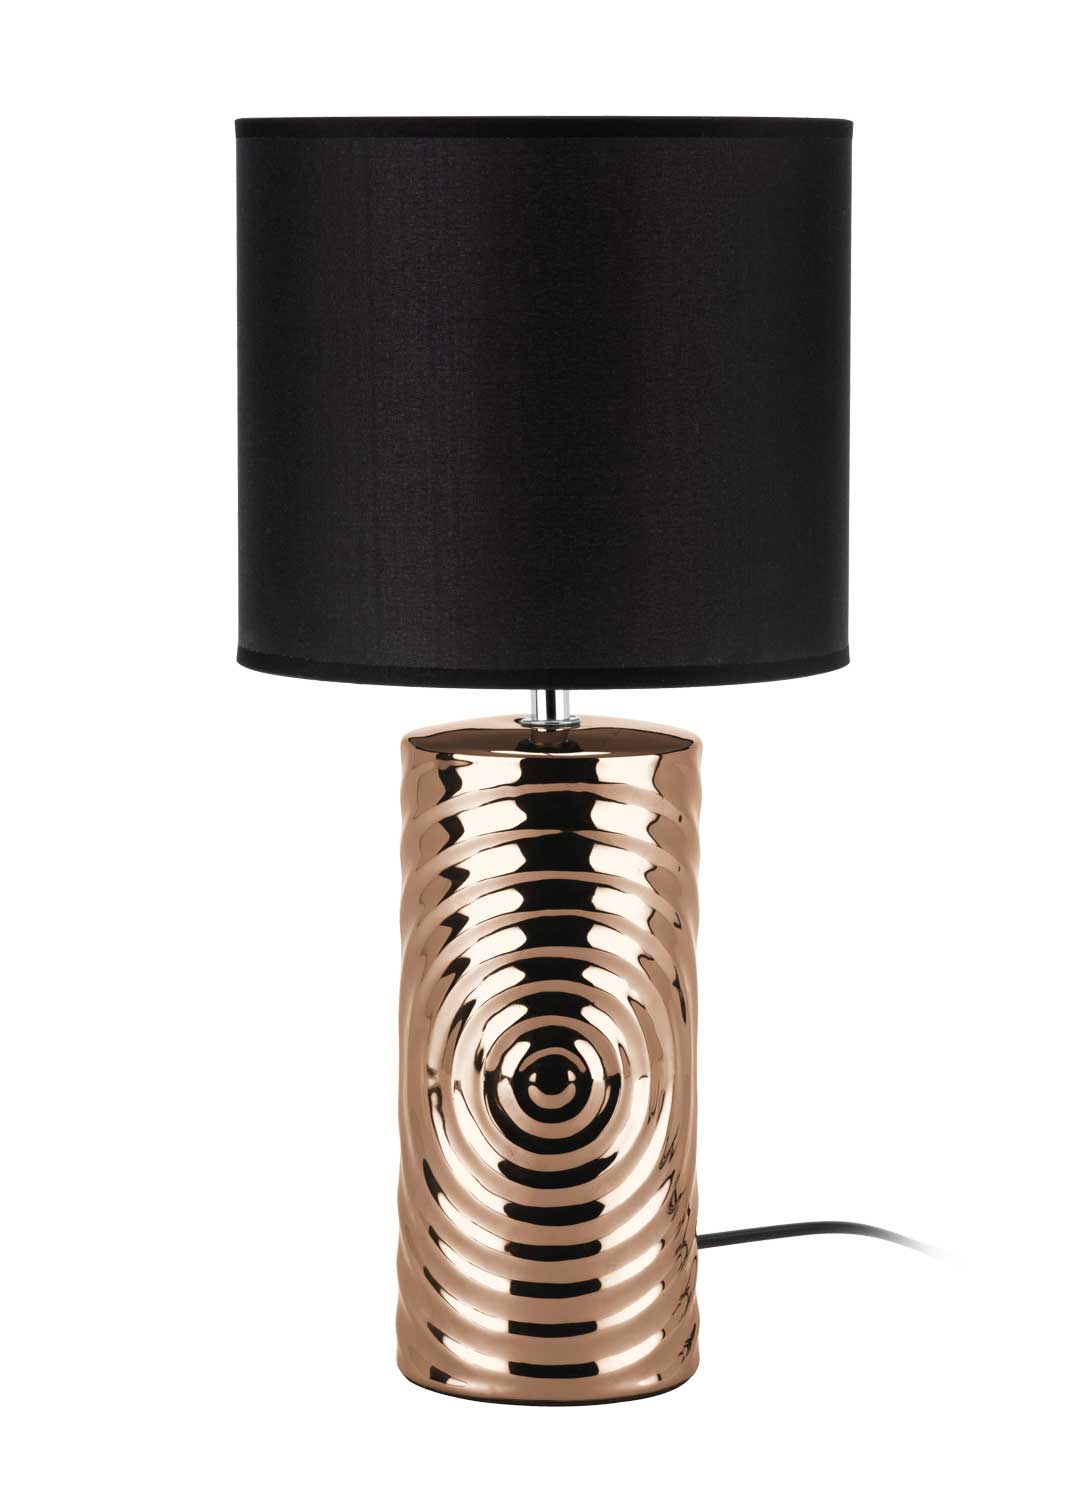  Lampe Carline cuivre/noire D20,50 H43